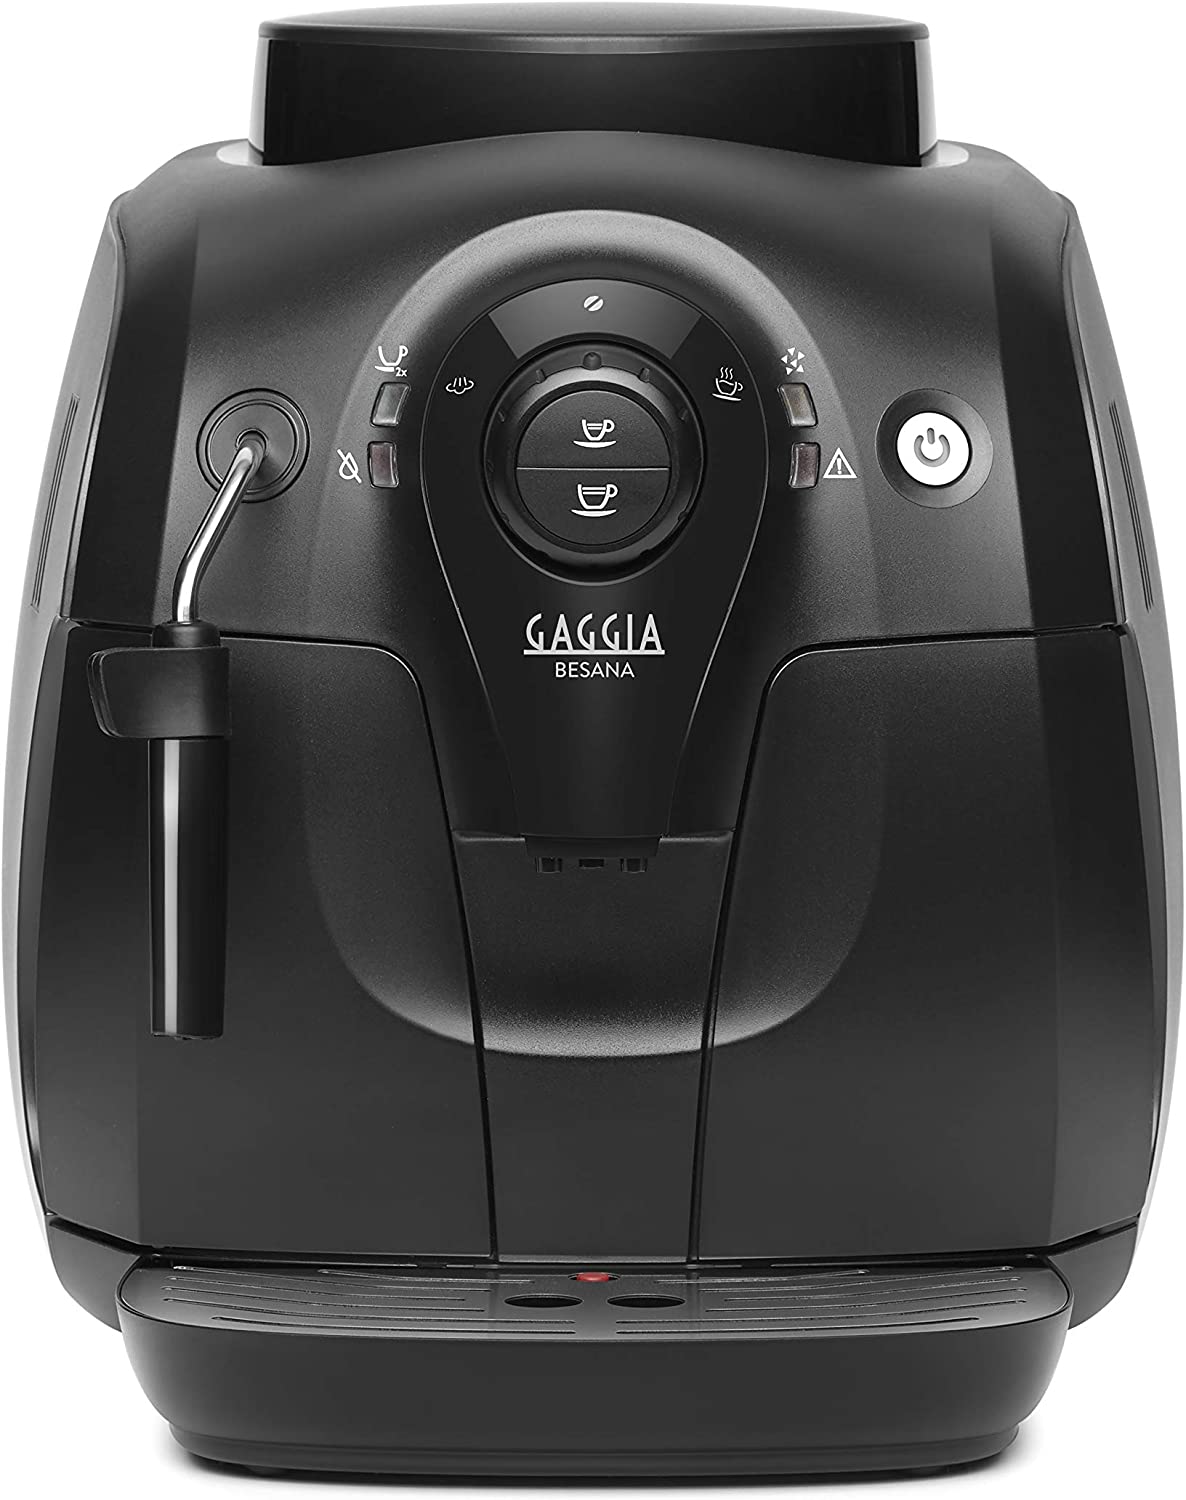 Gaggia Besana Automatic Coffee Machine for Espresso and Cappuccino Bean Coffee RI8081